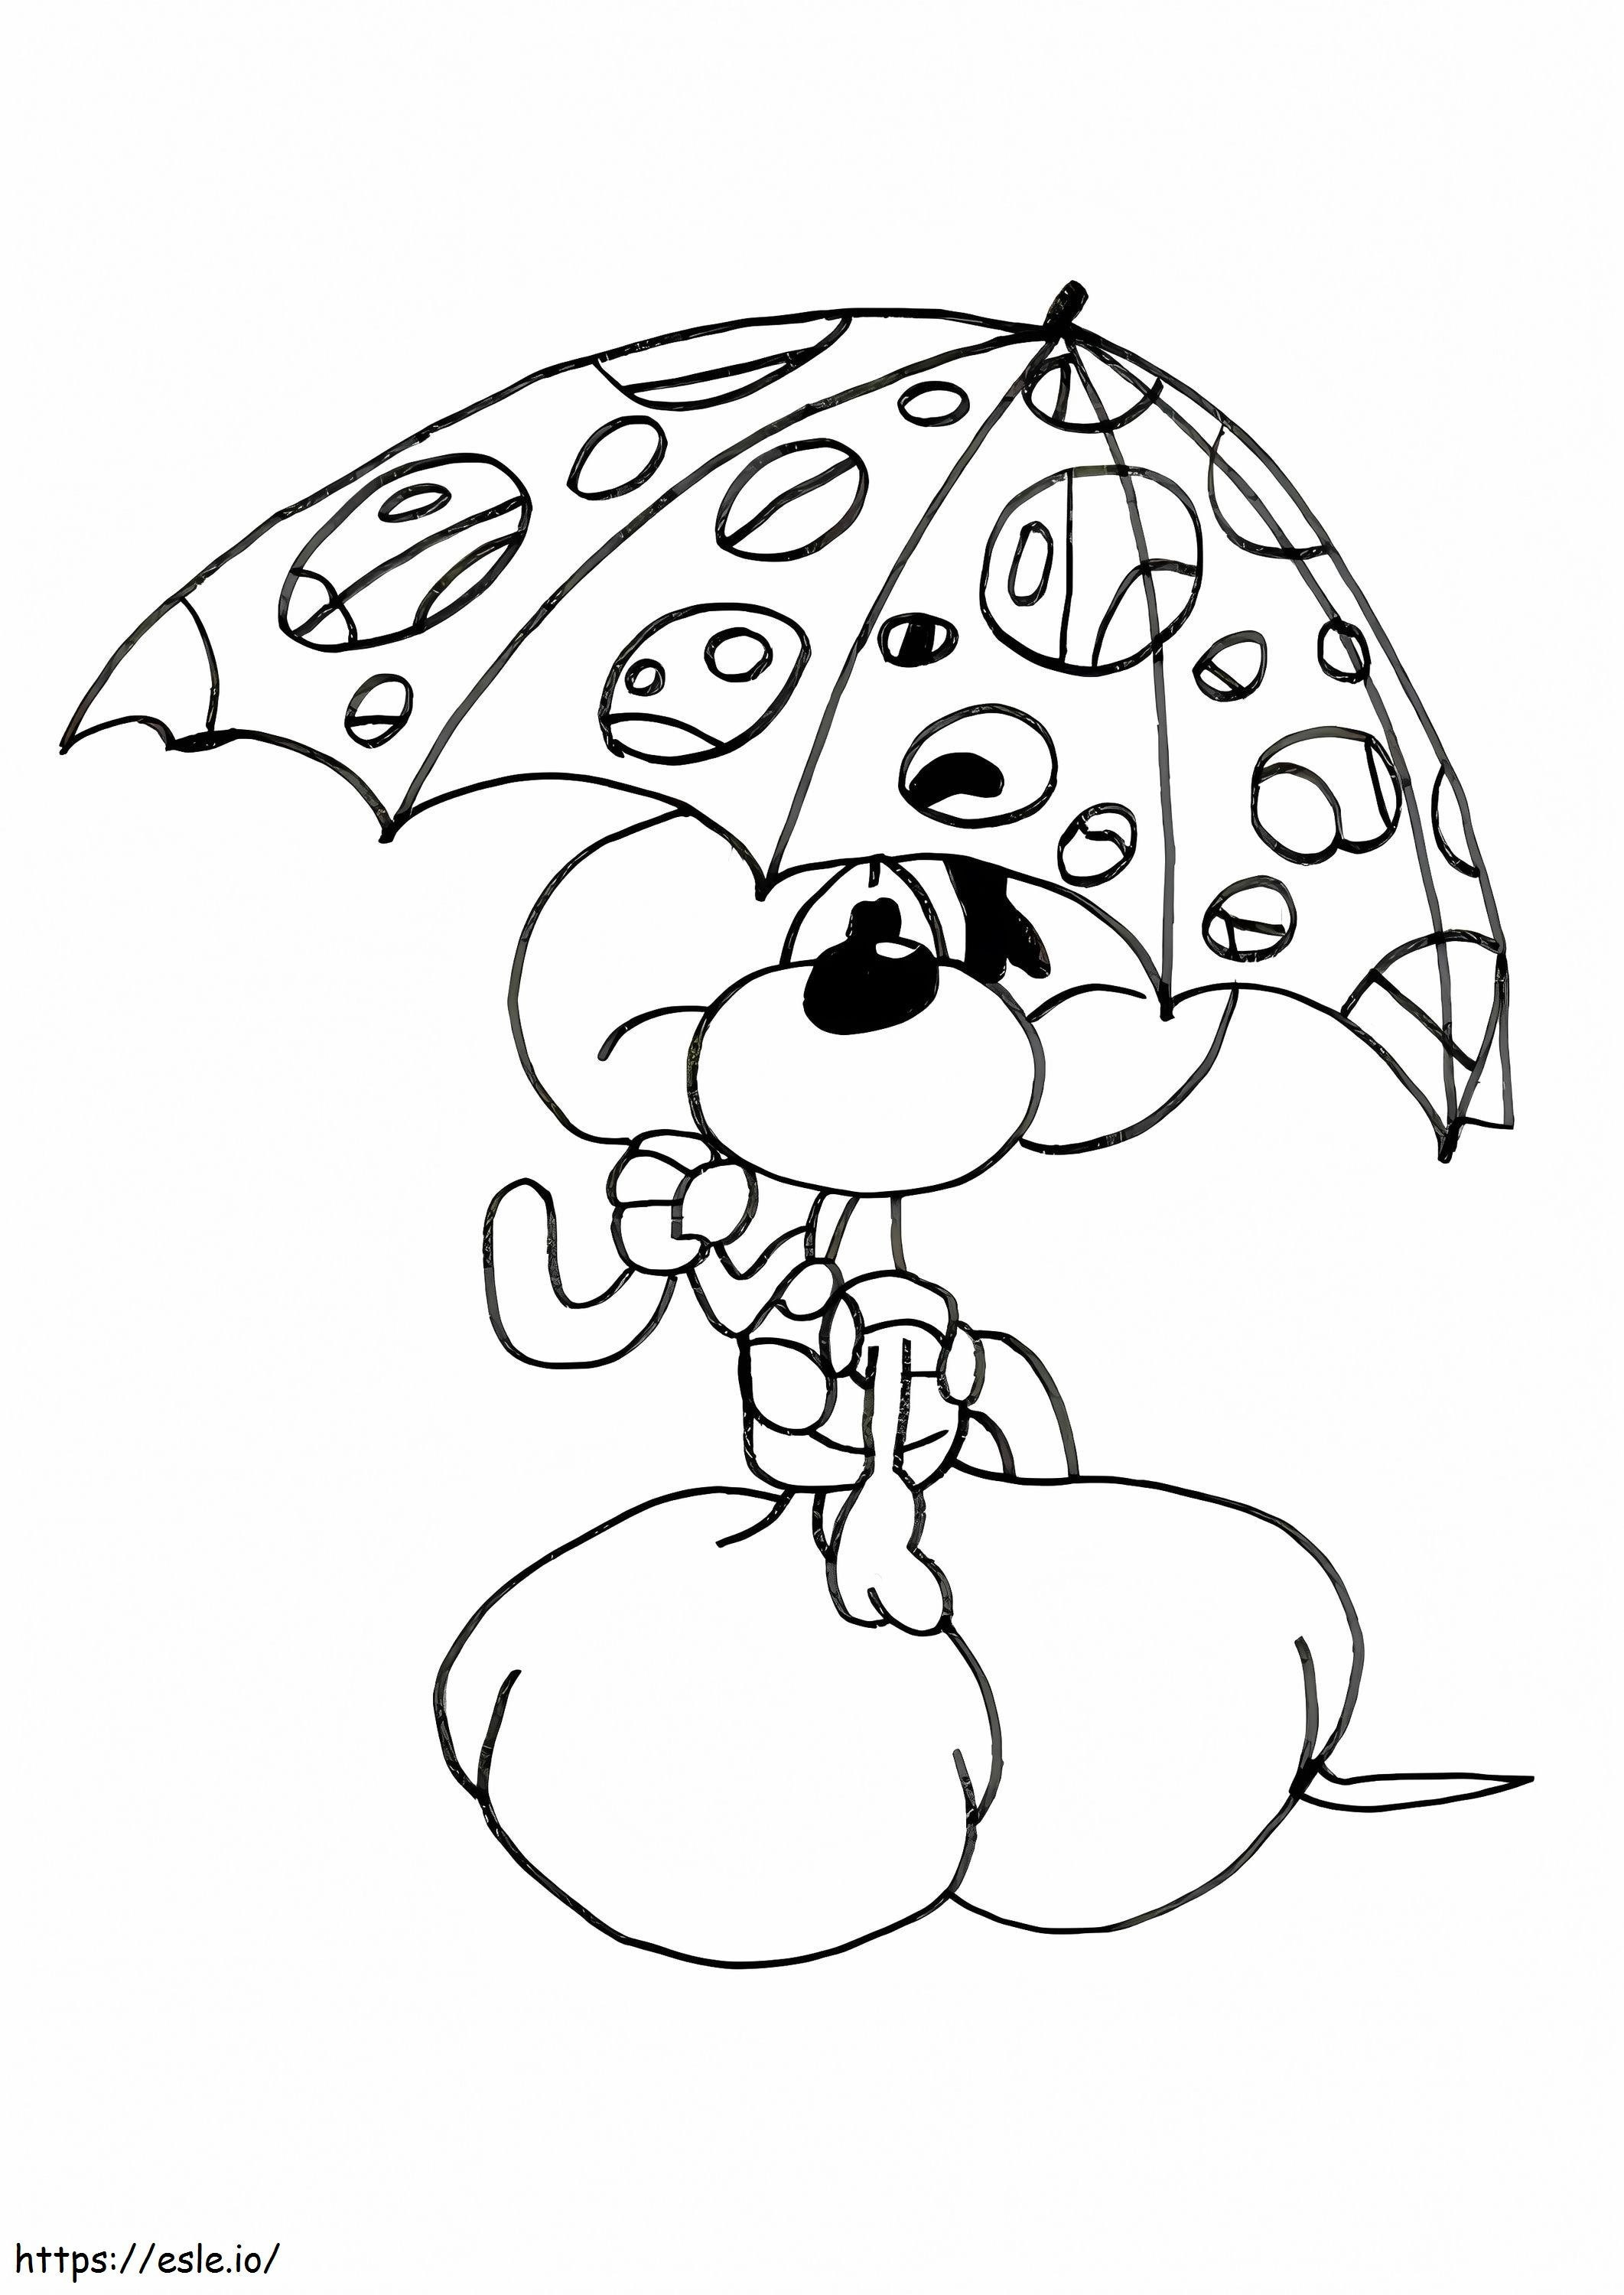 Diddl mit Regenschirm ausmalbilder